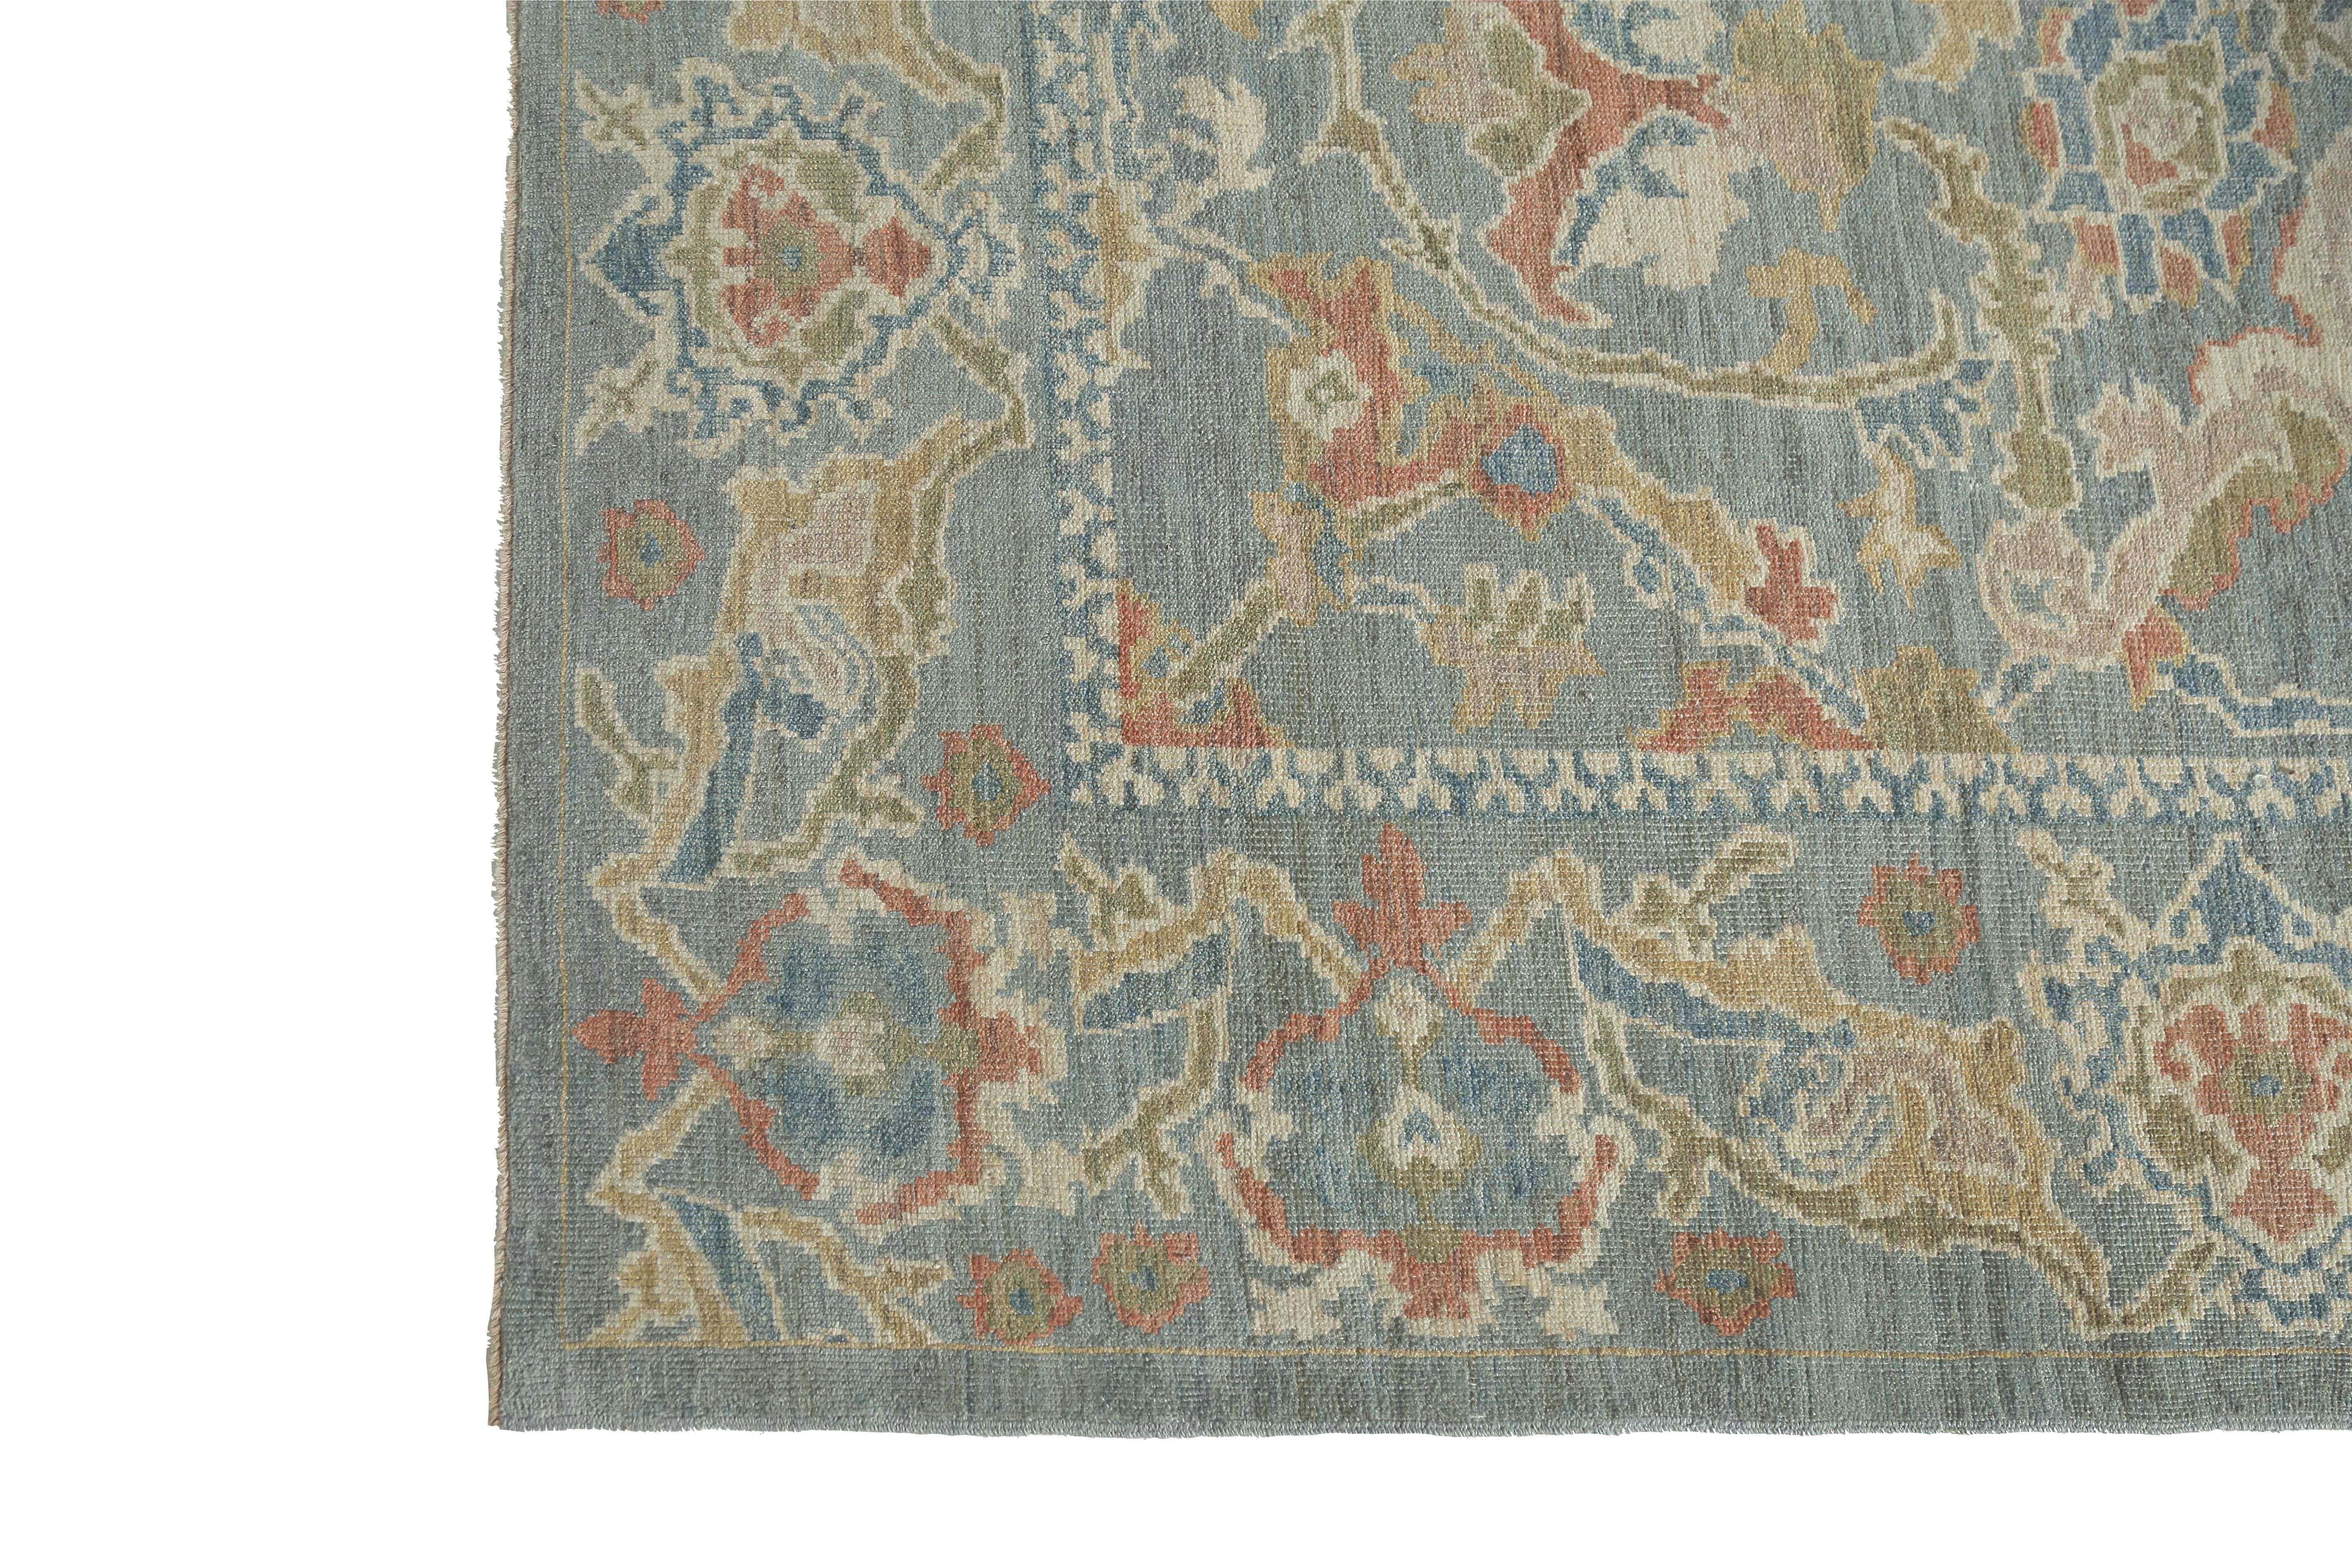 Voici un superbe tapis turc Sultanabad fait à la main ! Mesurant 9'6'' sur 12'10'', ce tapis présente une belle combinaison de couleurs jaune, orange et verte sur un fond bleu saisissant. Le design traditionnel de ce tapis ajoute une touche